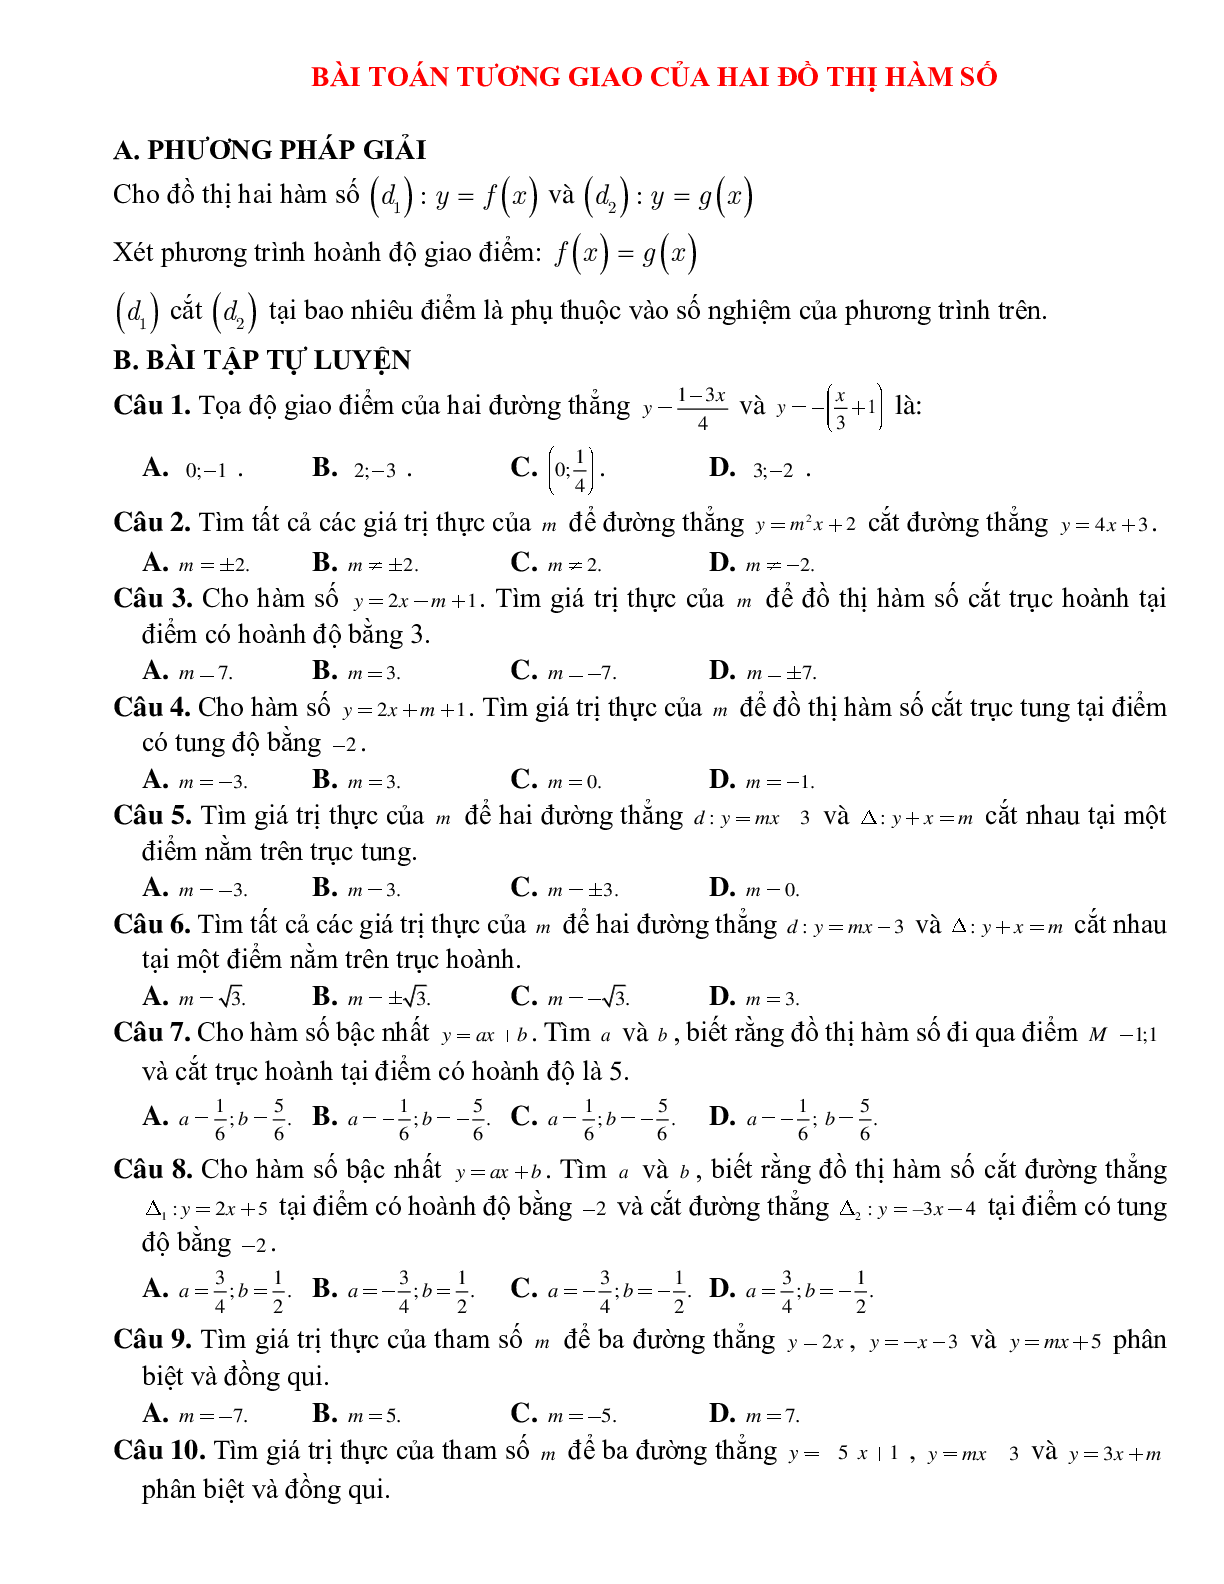 Bài tập tự luyện bài toán tương giao của hai đồ thị hàm số Toán 10 (trang 1)